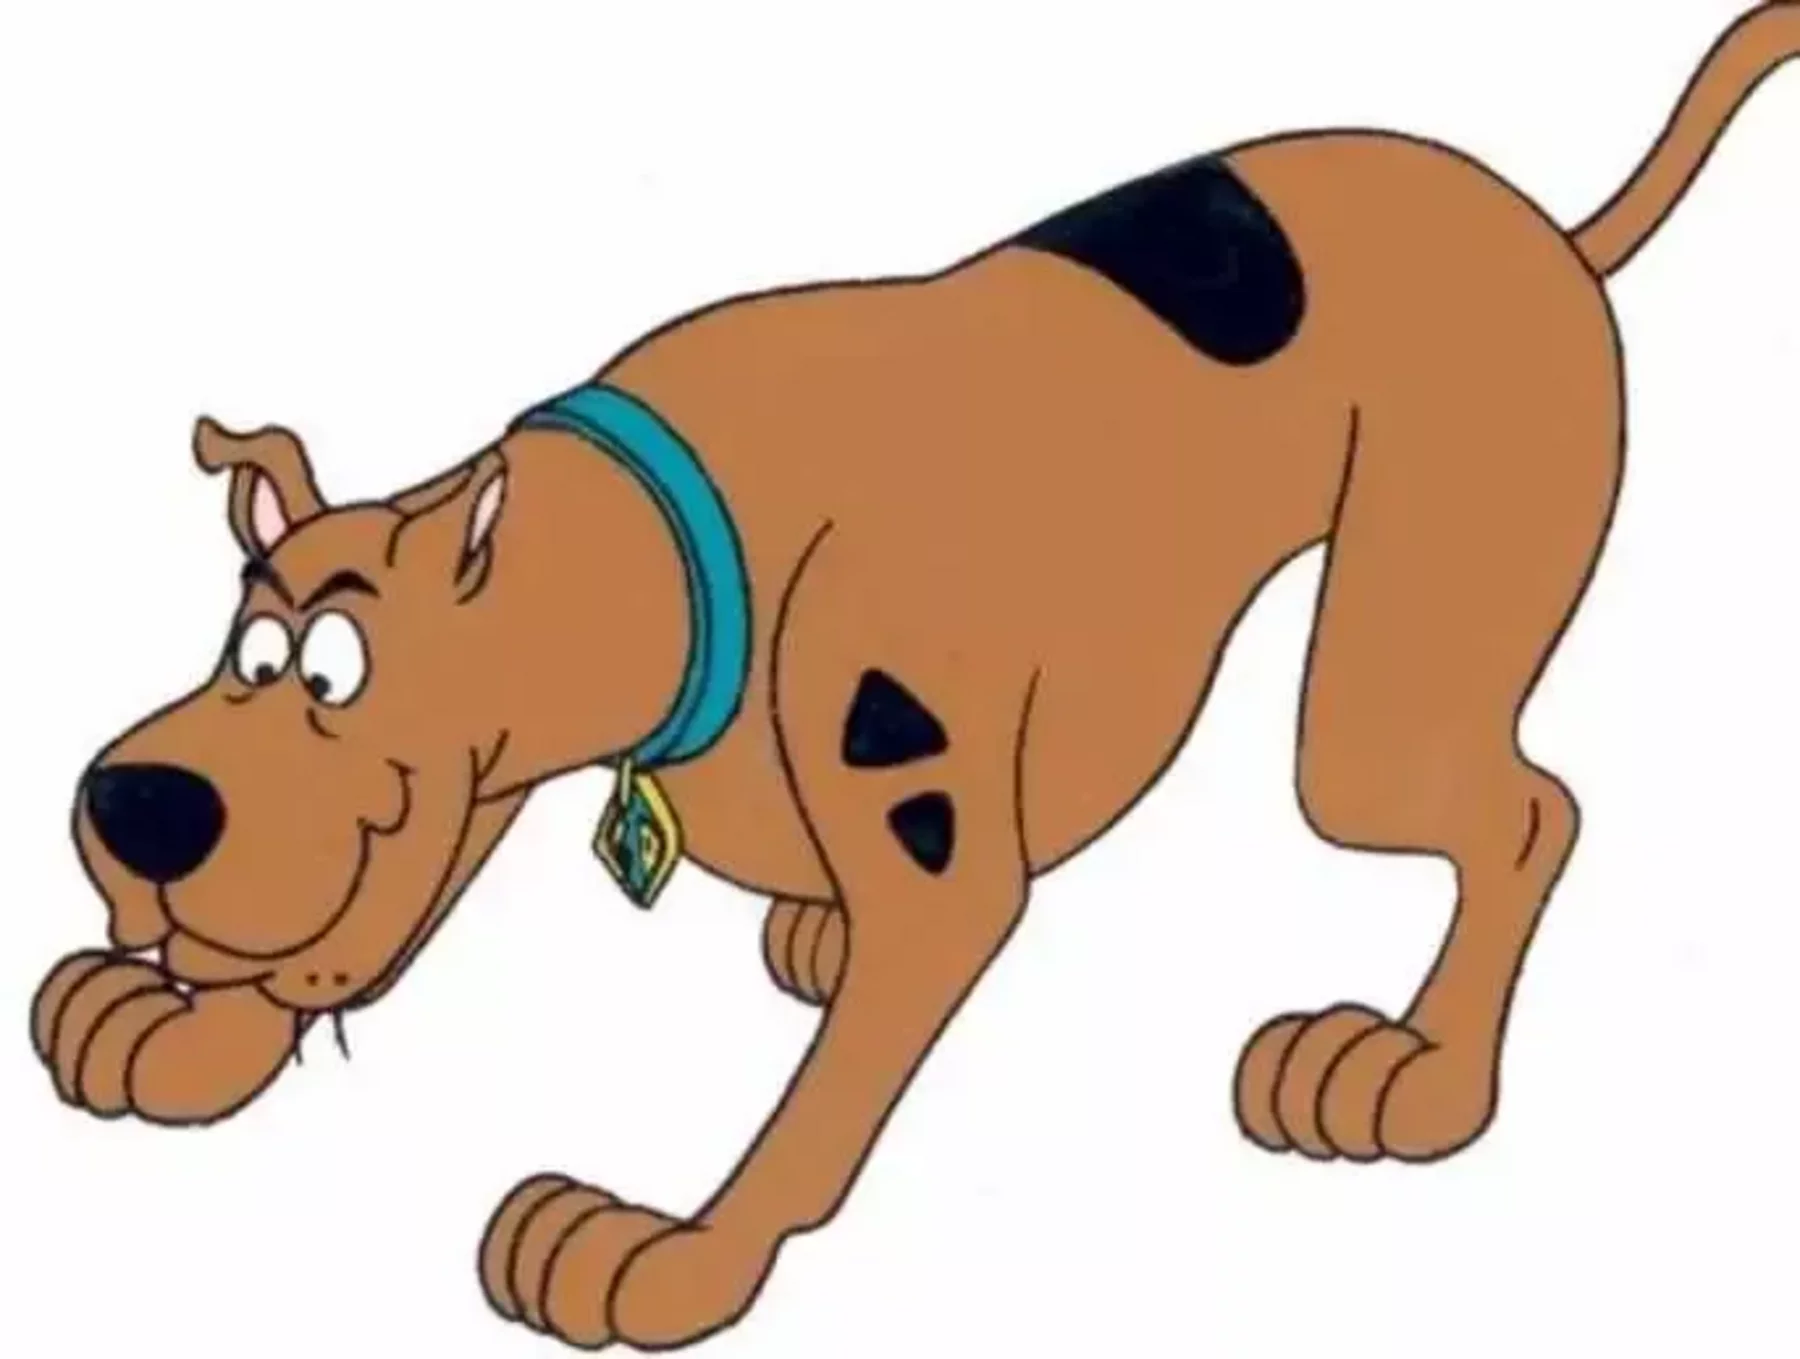 Healthiest' kids cartoon character is Scooby Doo | Healthcare Digital